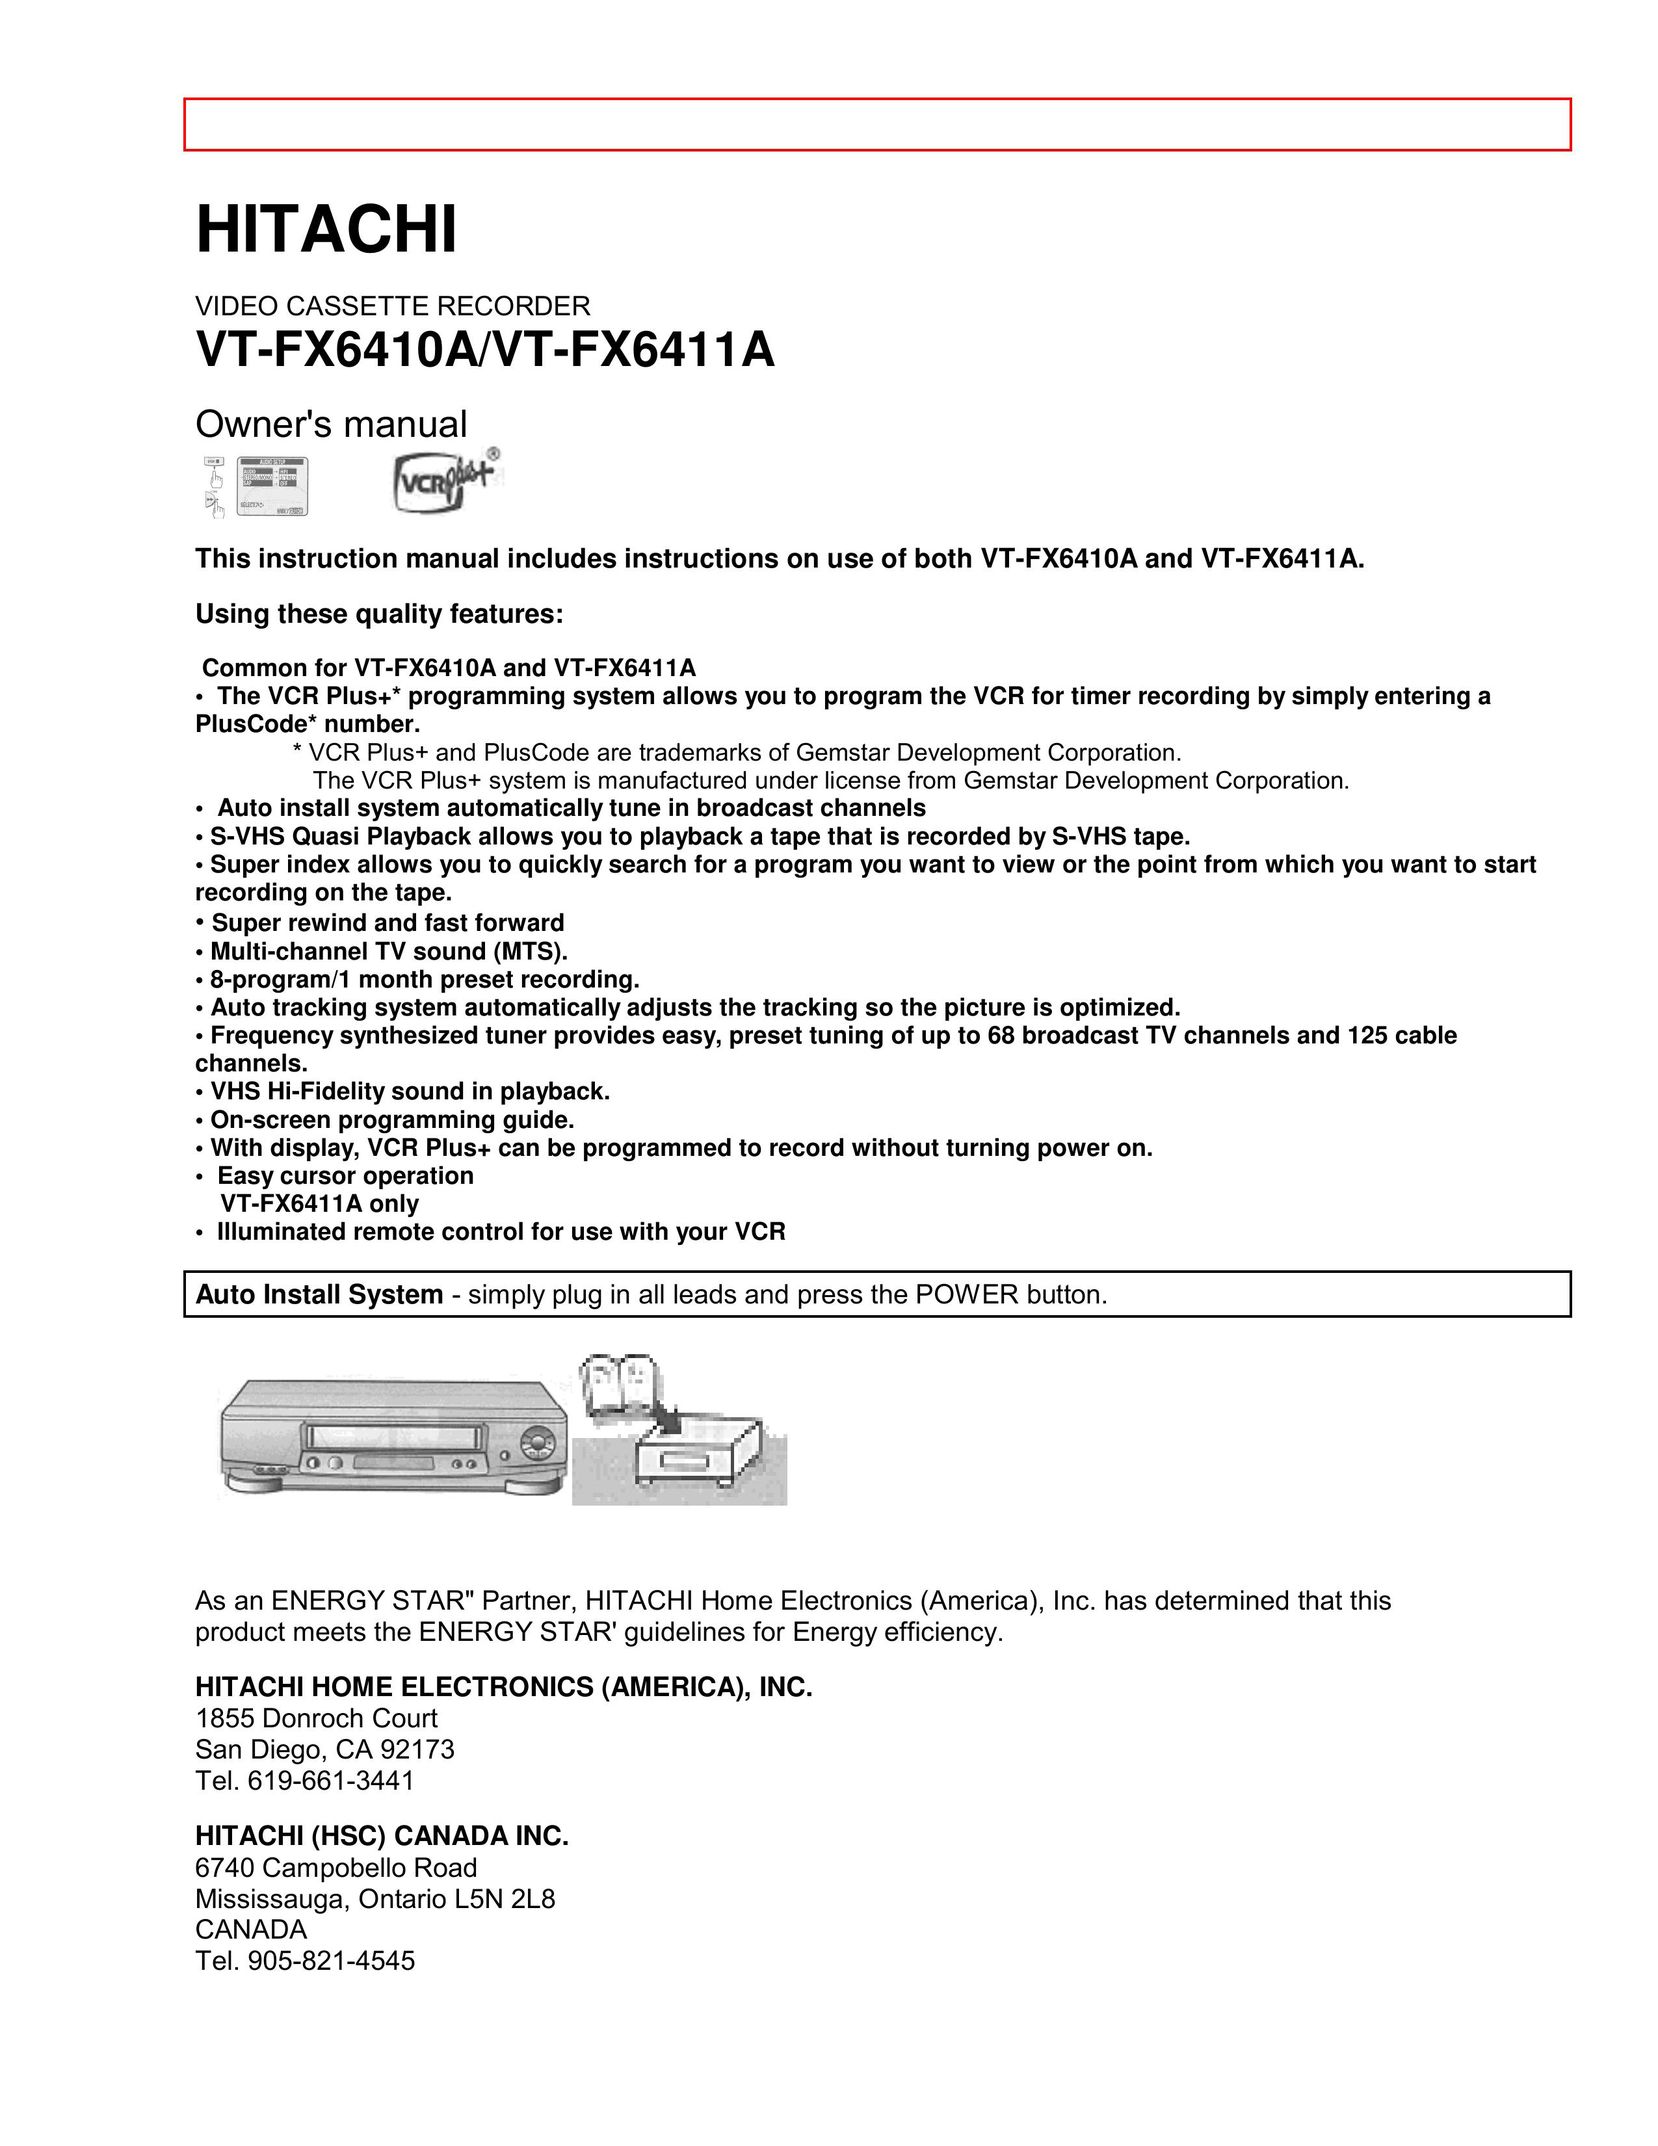 Hitachi VT-FX6410A VCR User Manual